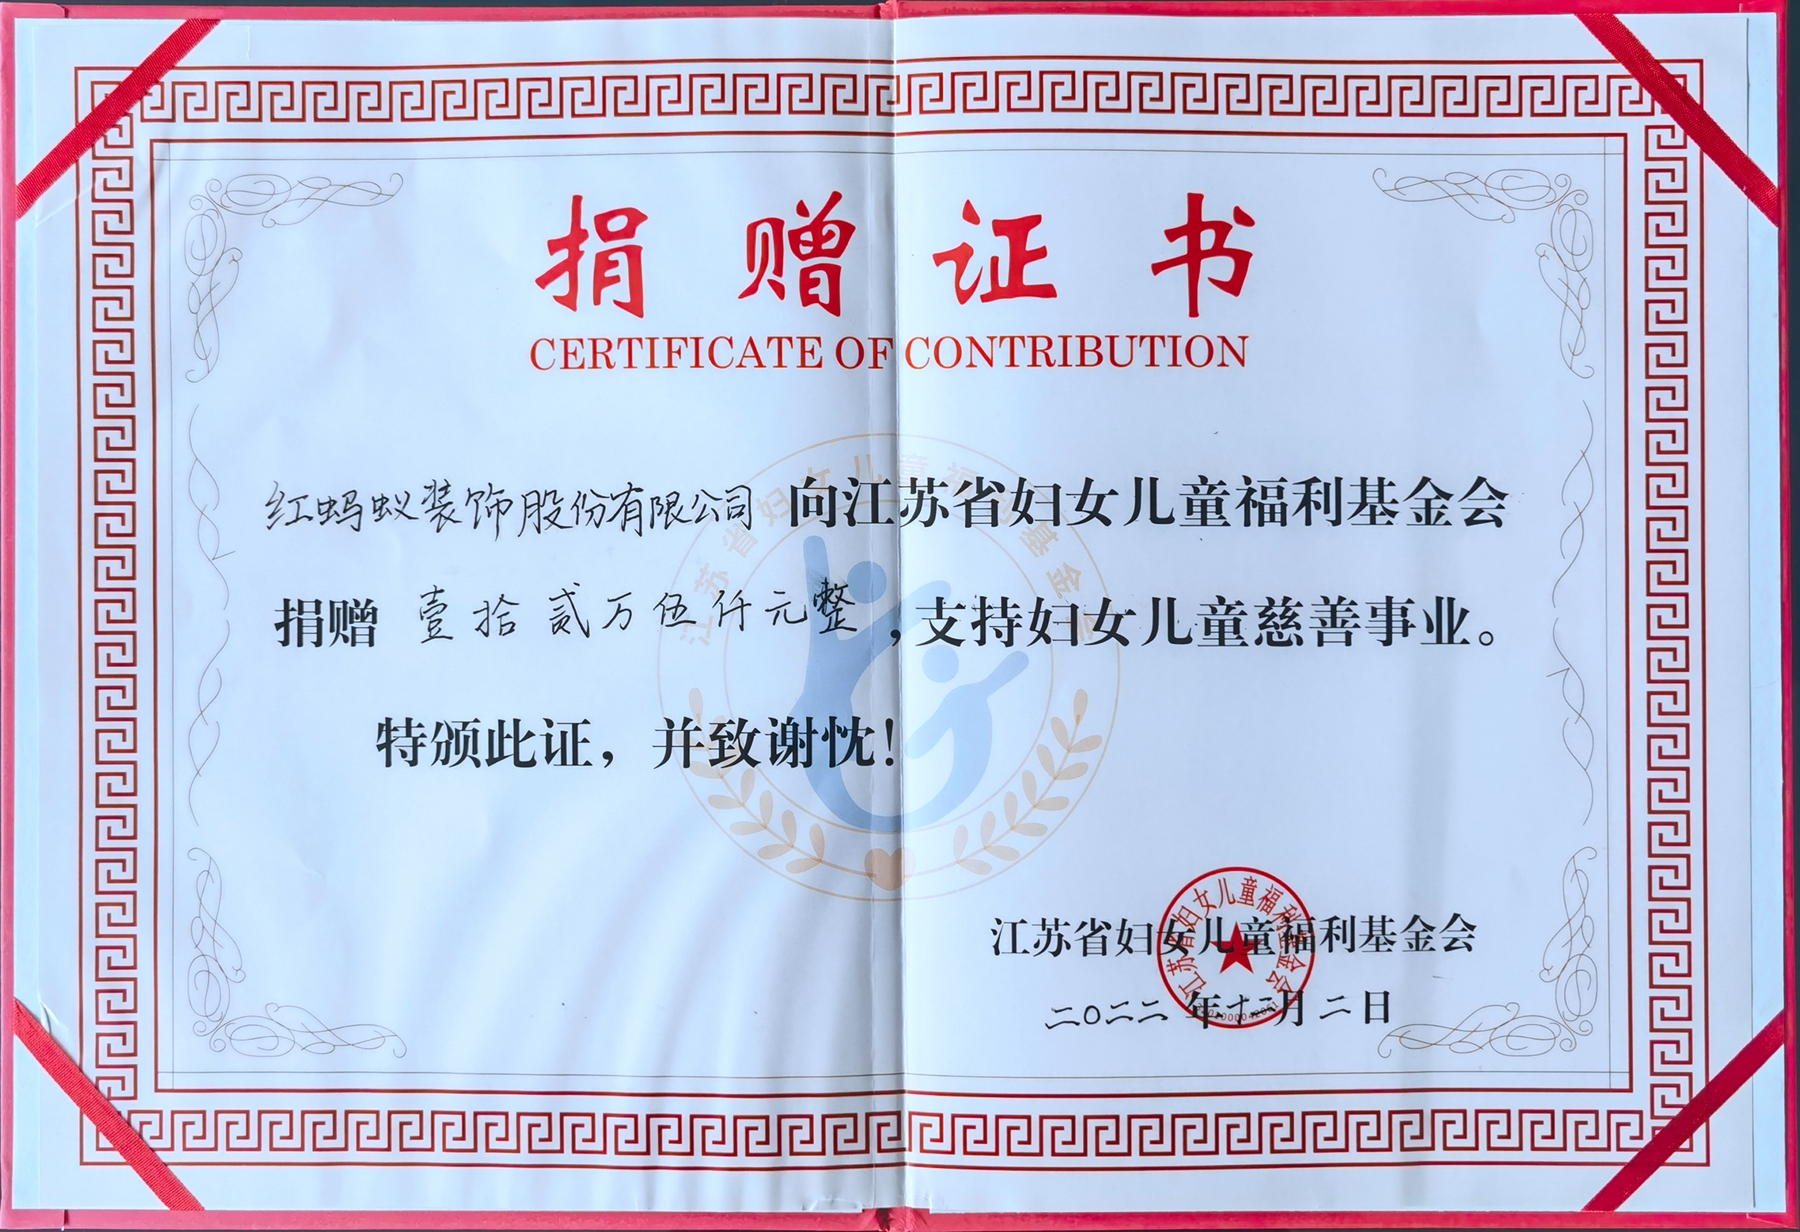 江苏省妇女儿童福利基金会捐款证书-红蚂蚁.jpg